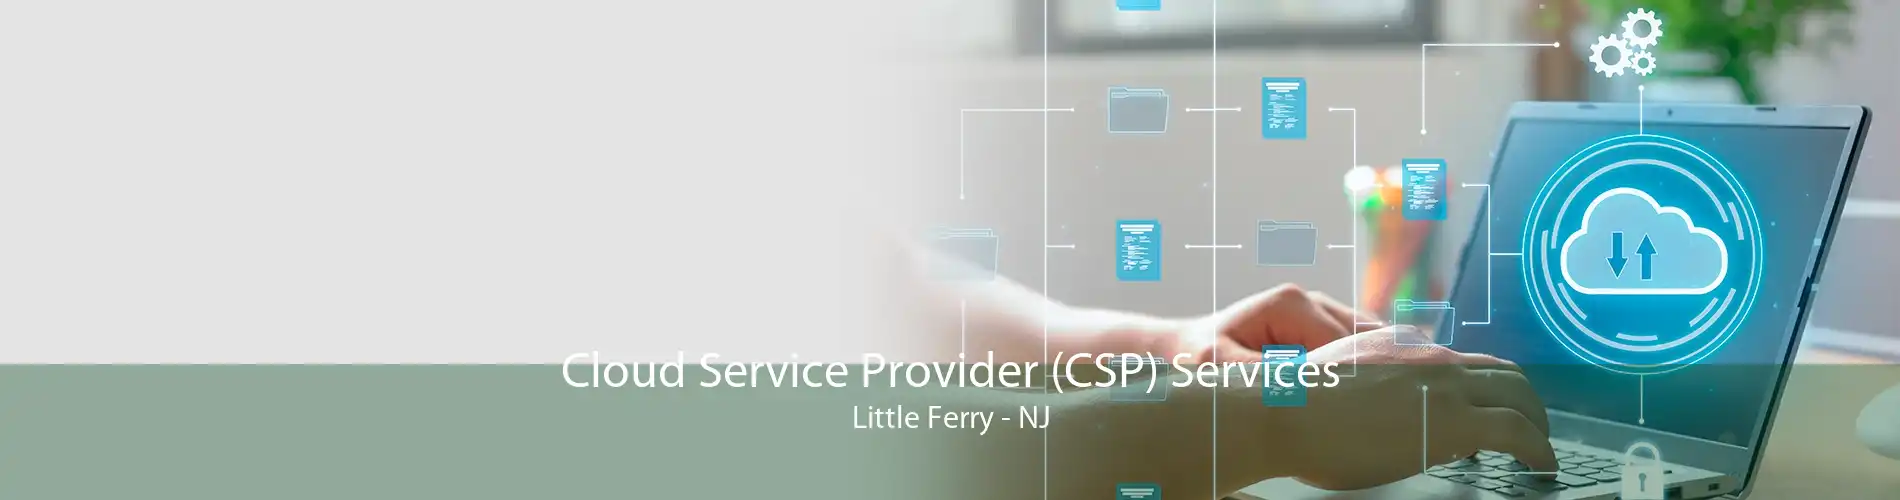 Cloud Service Provider (CSP) Services Little Ferry - NJ